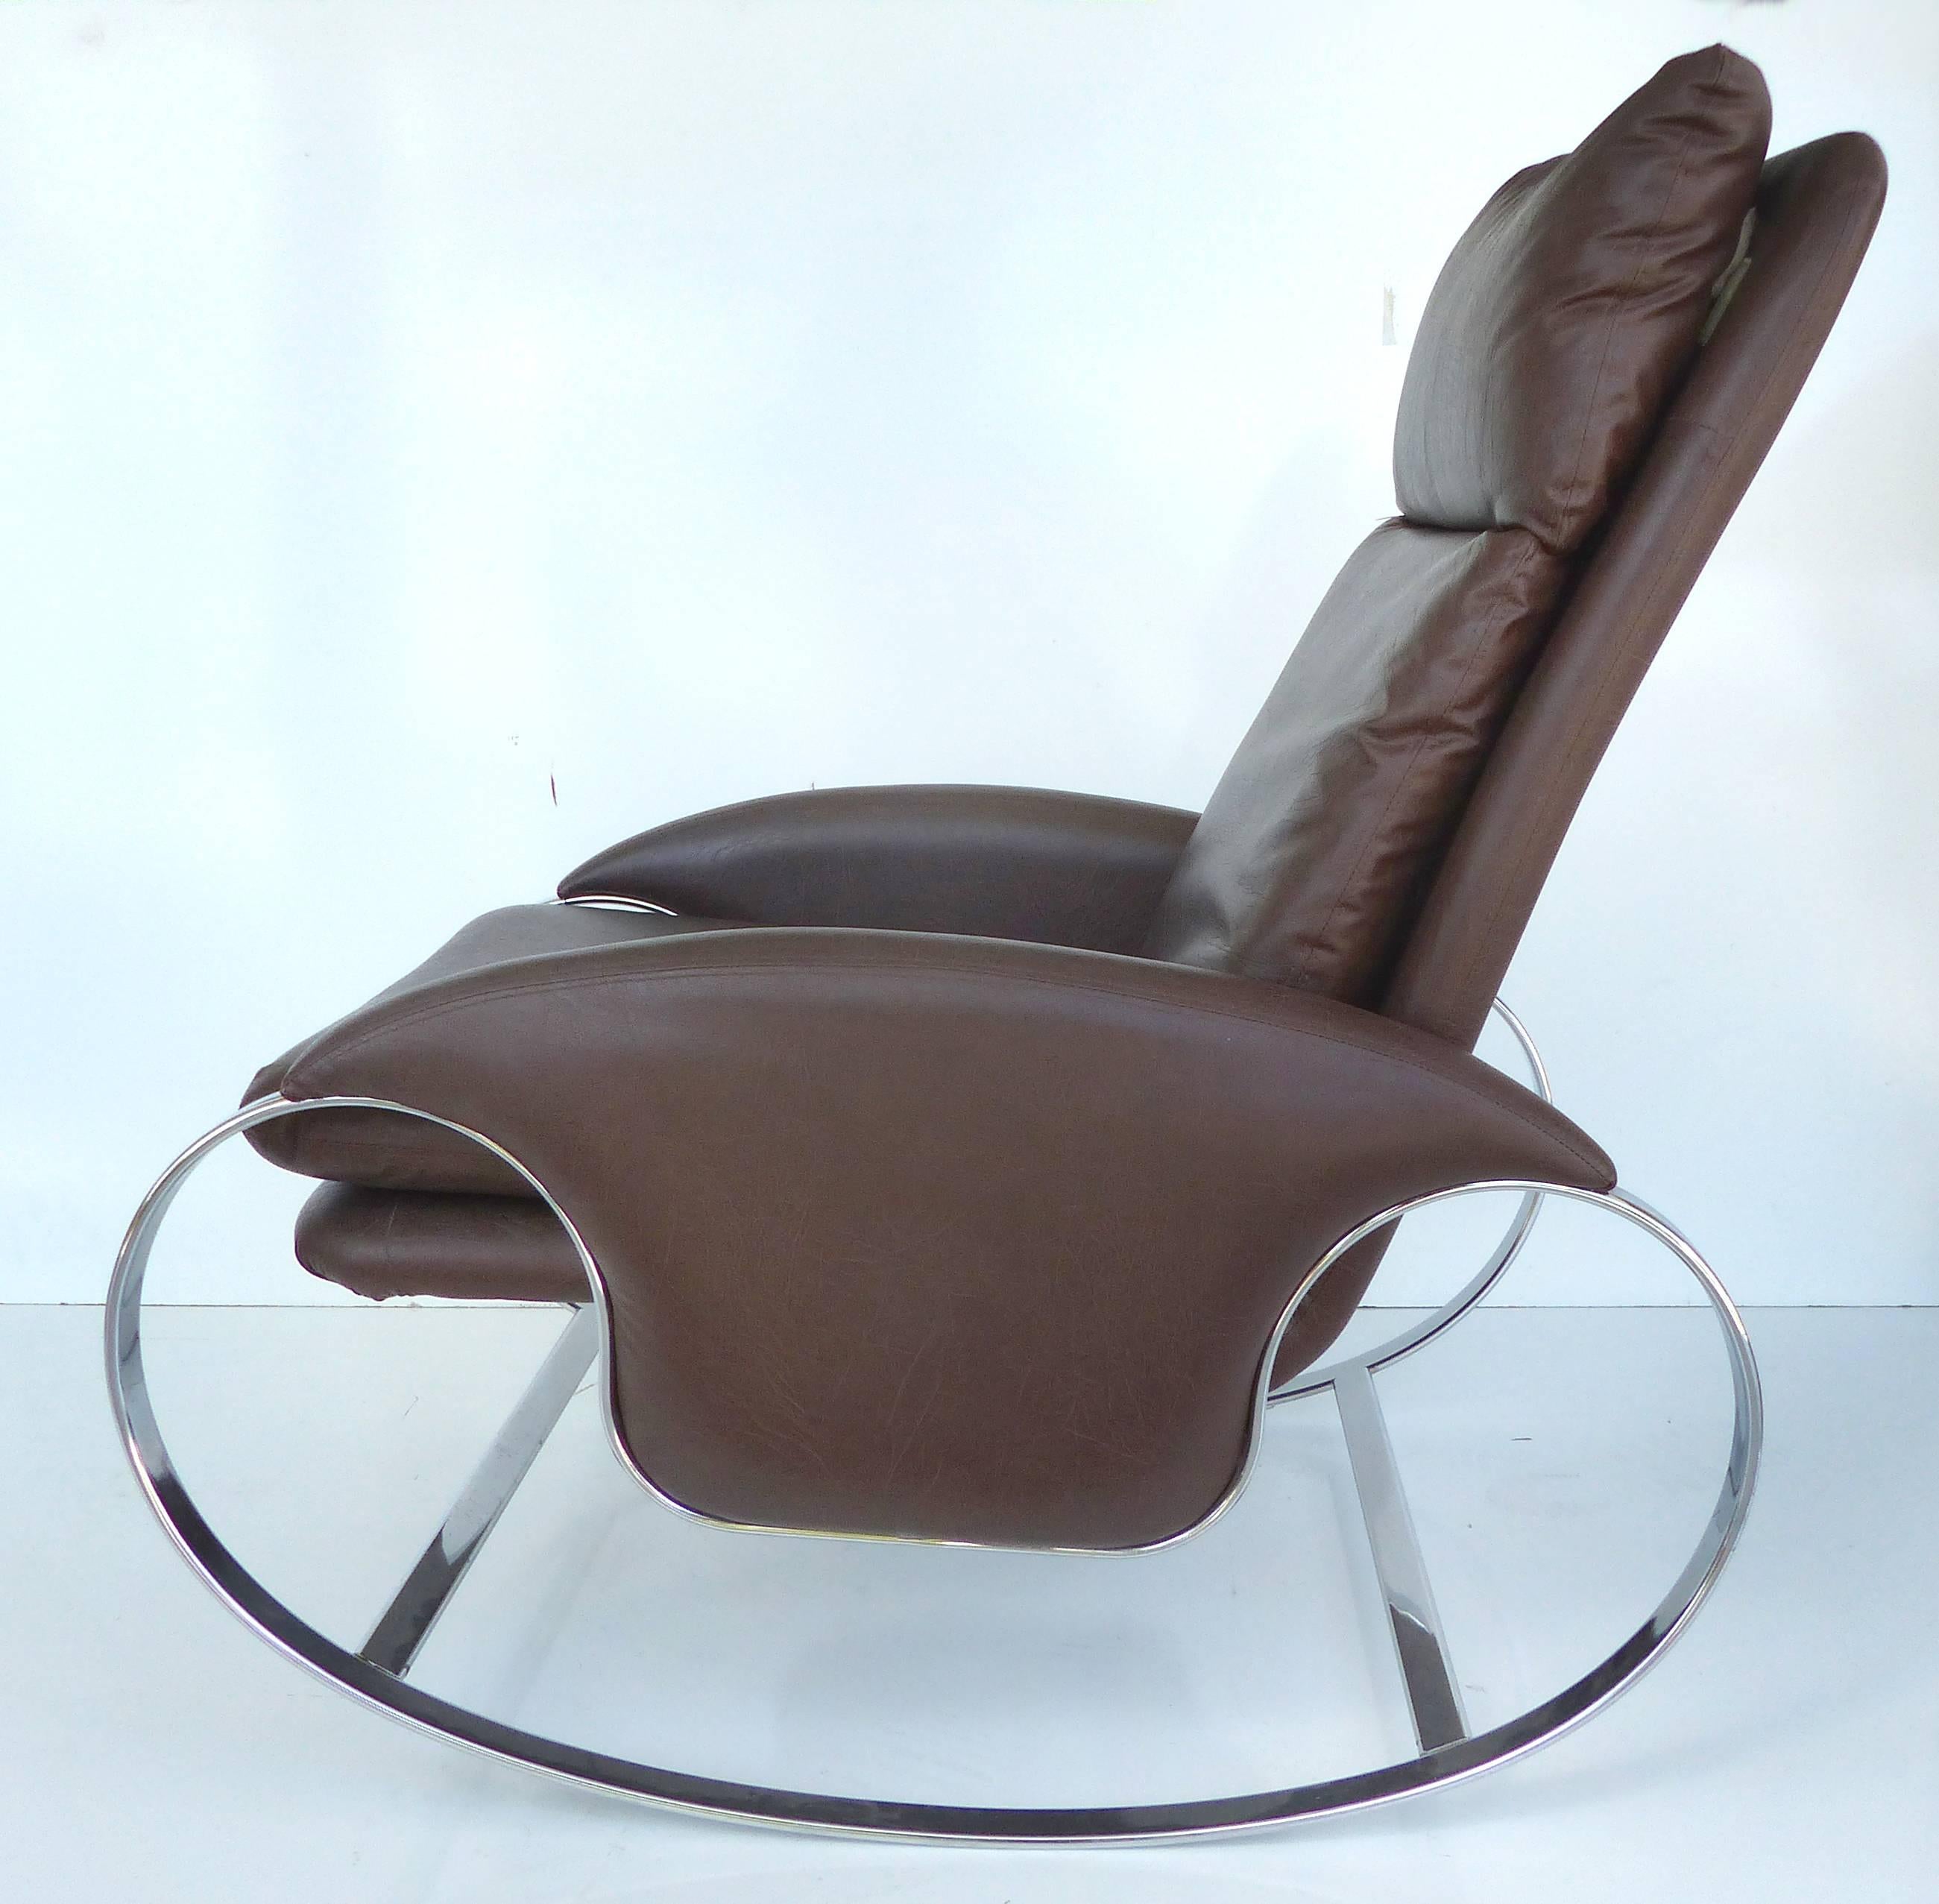 1970er Guido Faleschini Chrom Schaukelstuhl

Ein eleganter Schaukelstuhl mit geschwungenem, verchromtem Gestell aus der Jahrhundertmitte, bezogen mit Naugahyde. Der Stuhl ist mit eleganten, mit Reißverschluss versehenen Kissen ausgestattet. Das